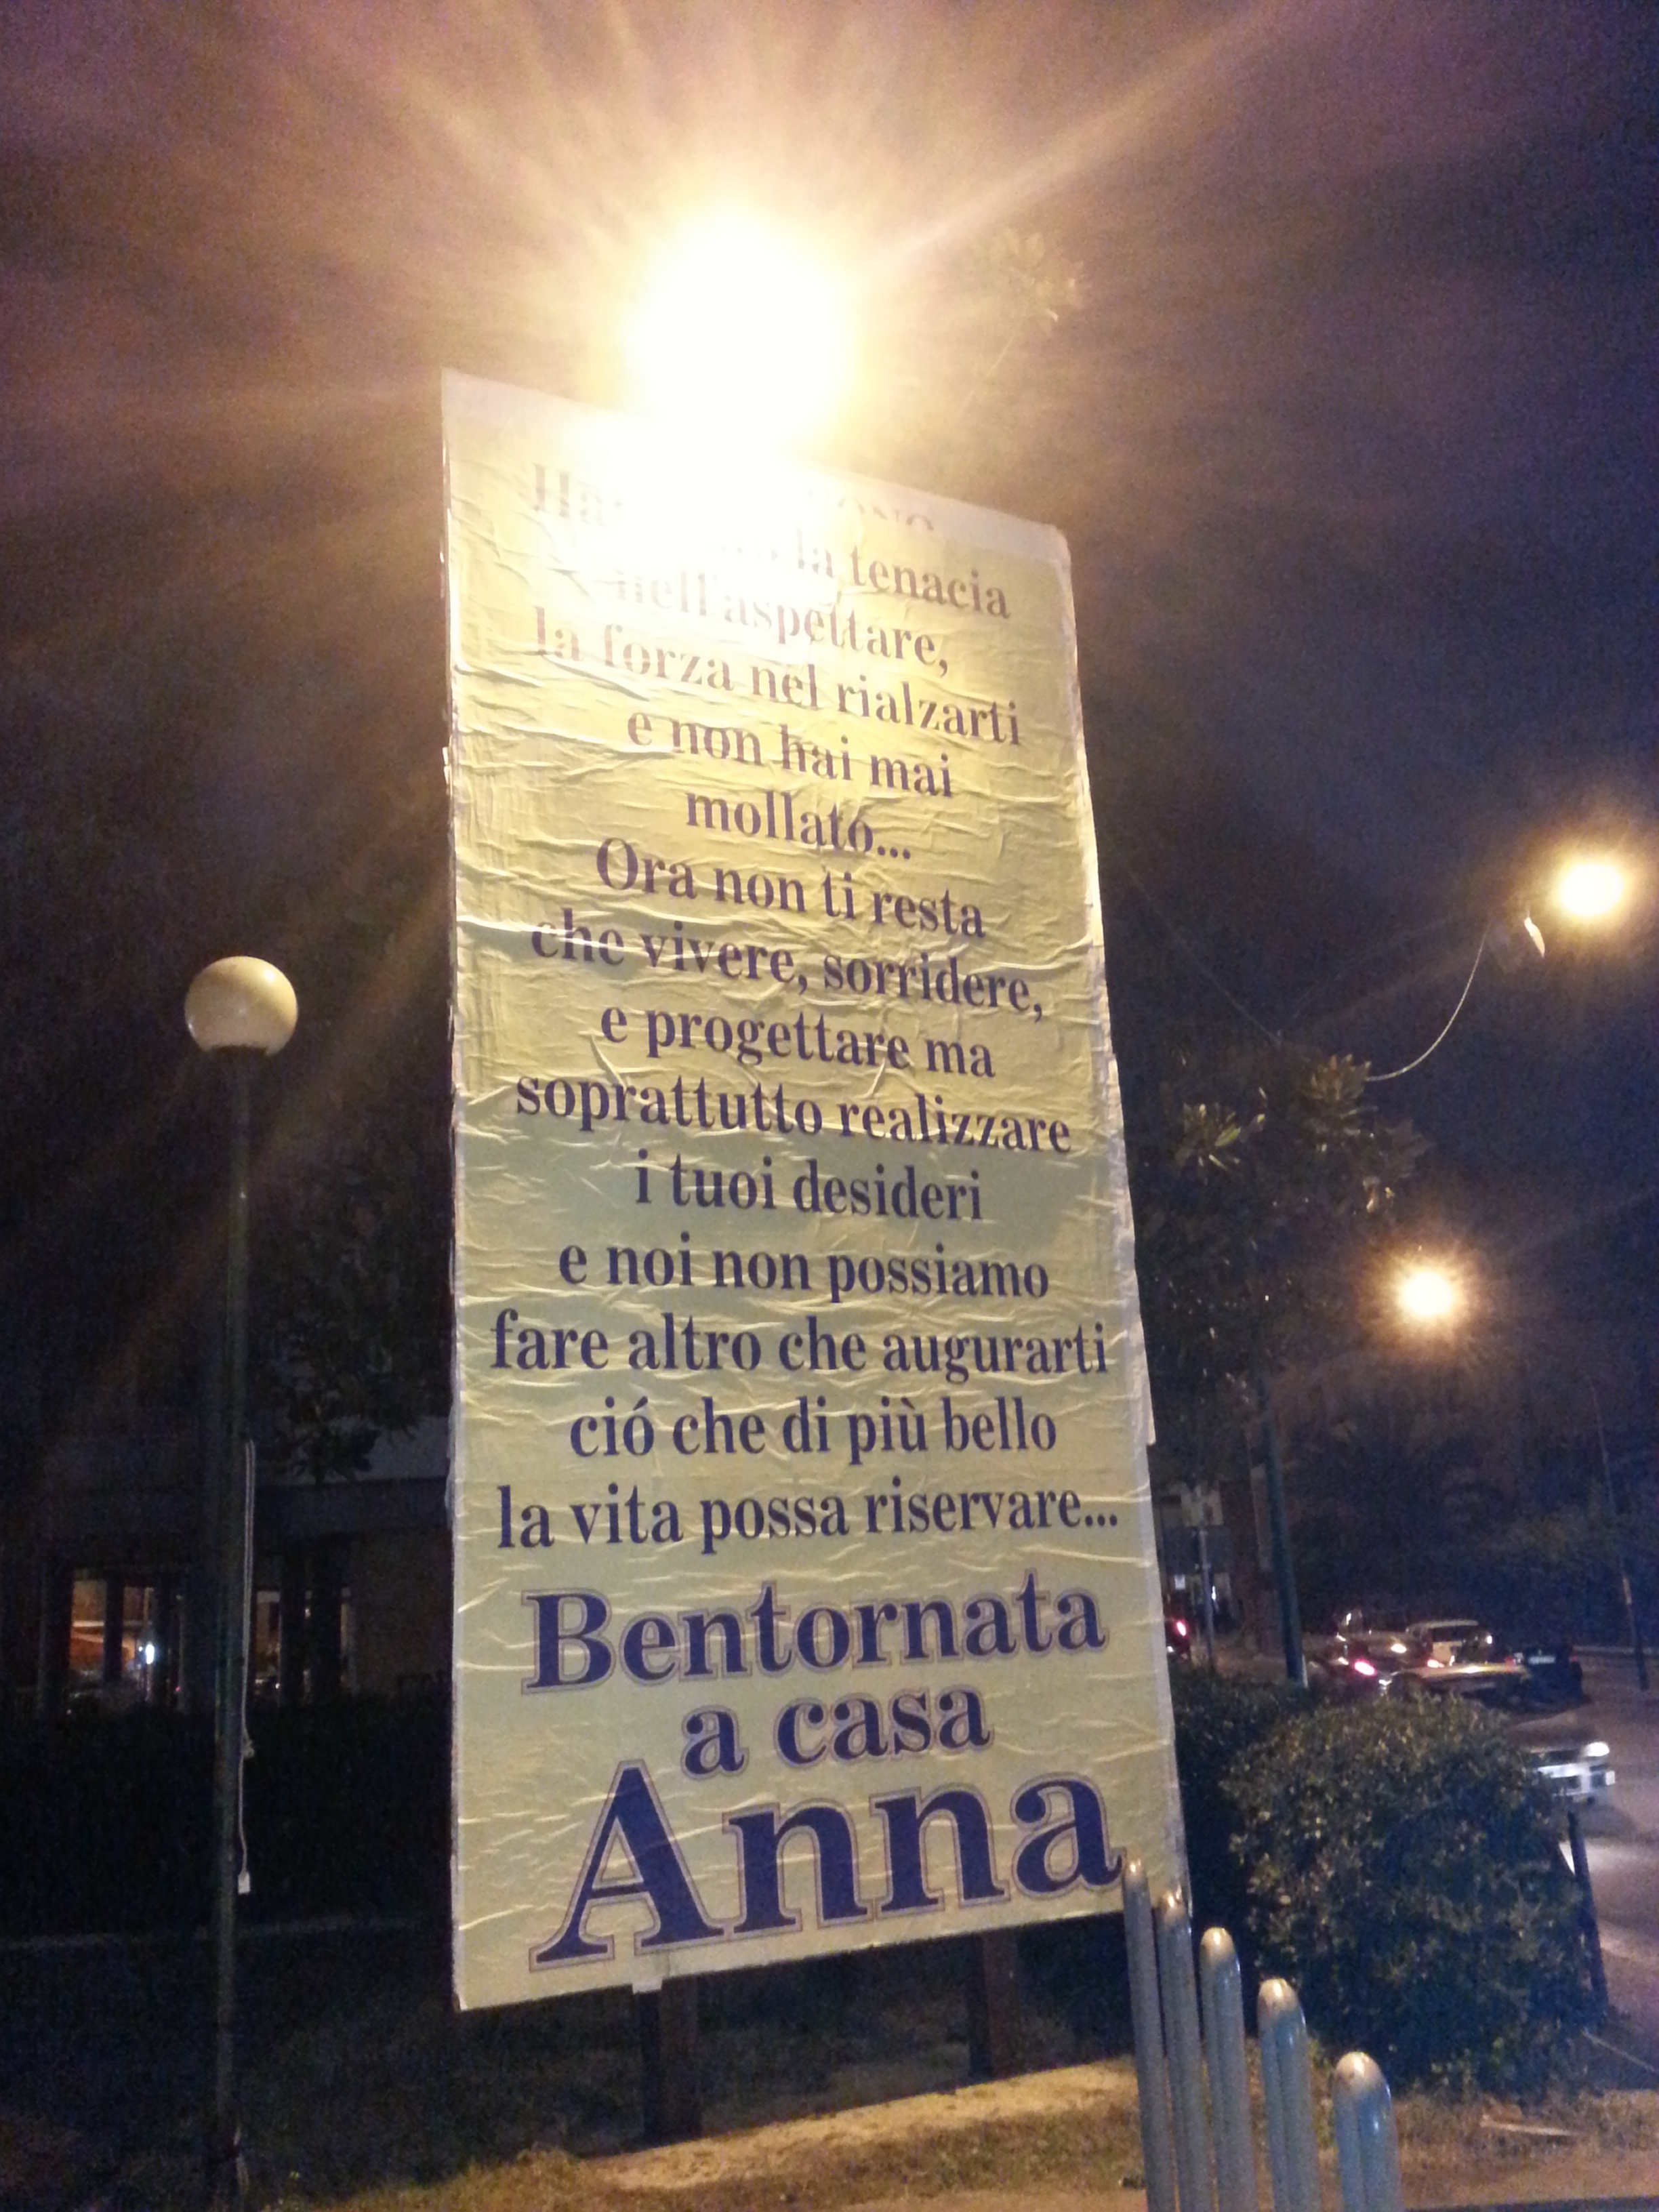 FOTO – Un mega poster campeggia a Saviano: “Bentornata a casa Anna”